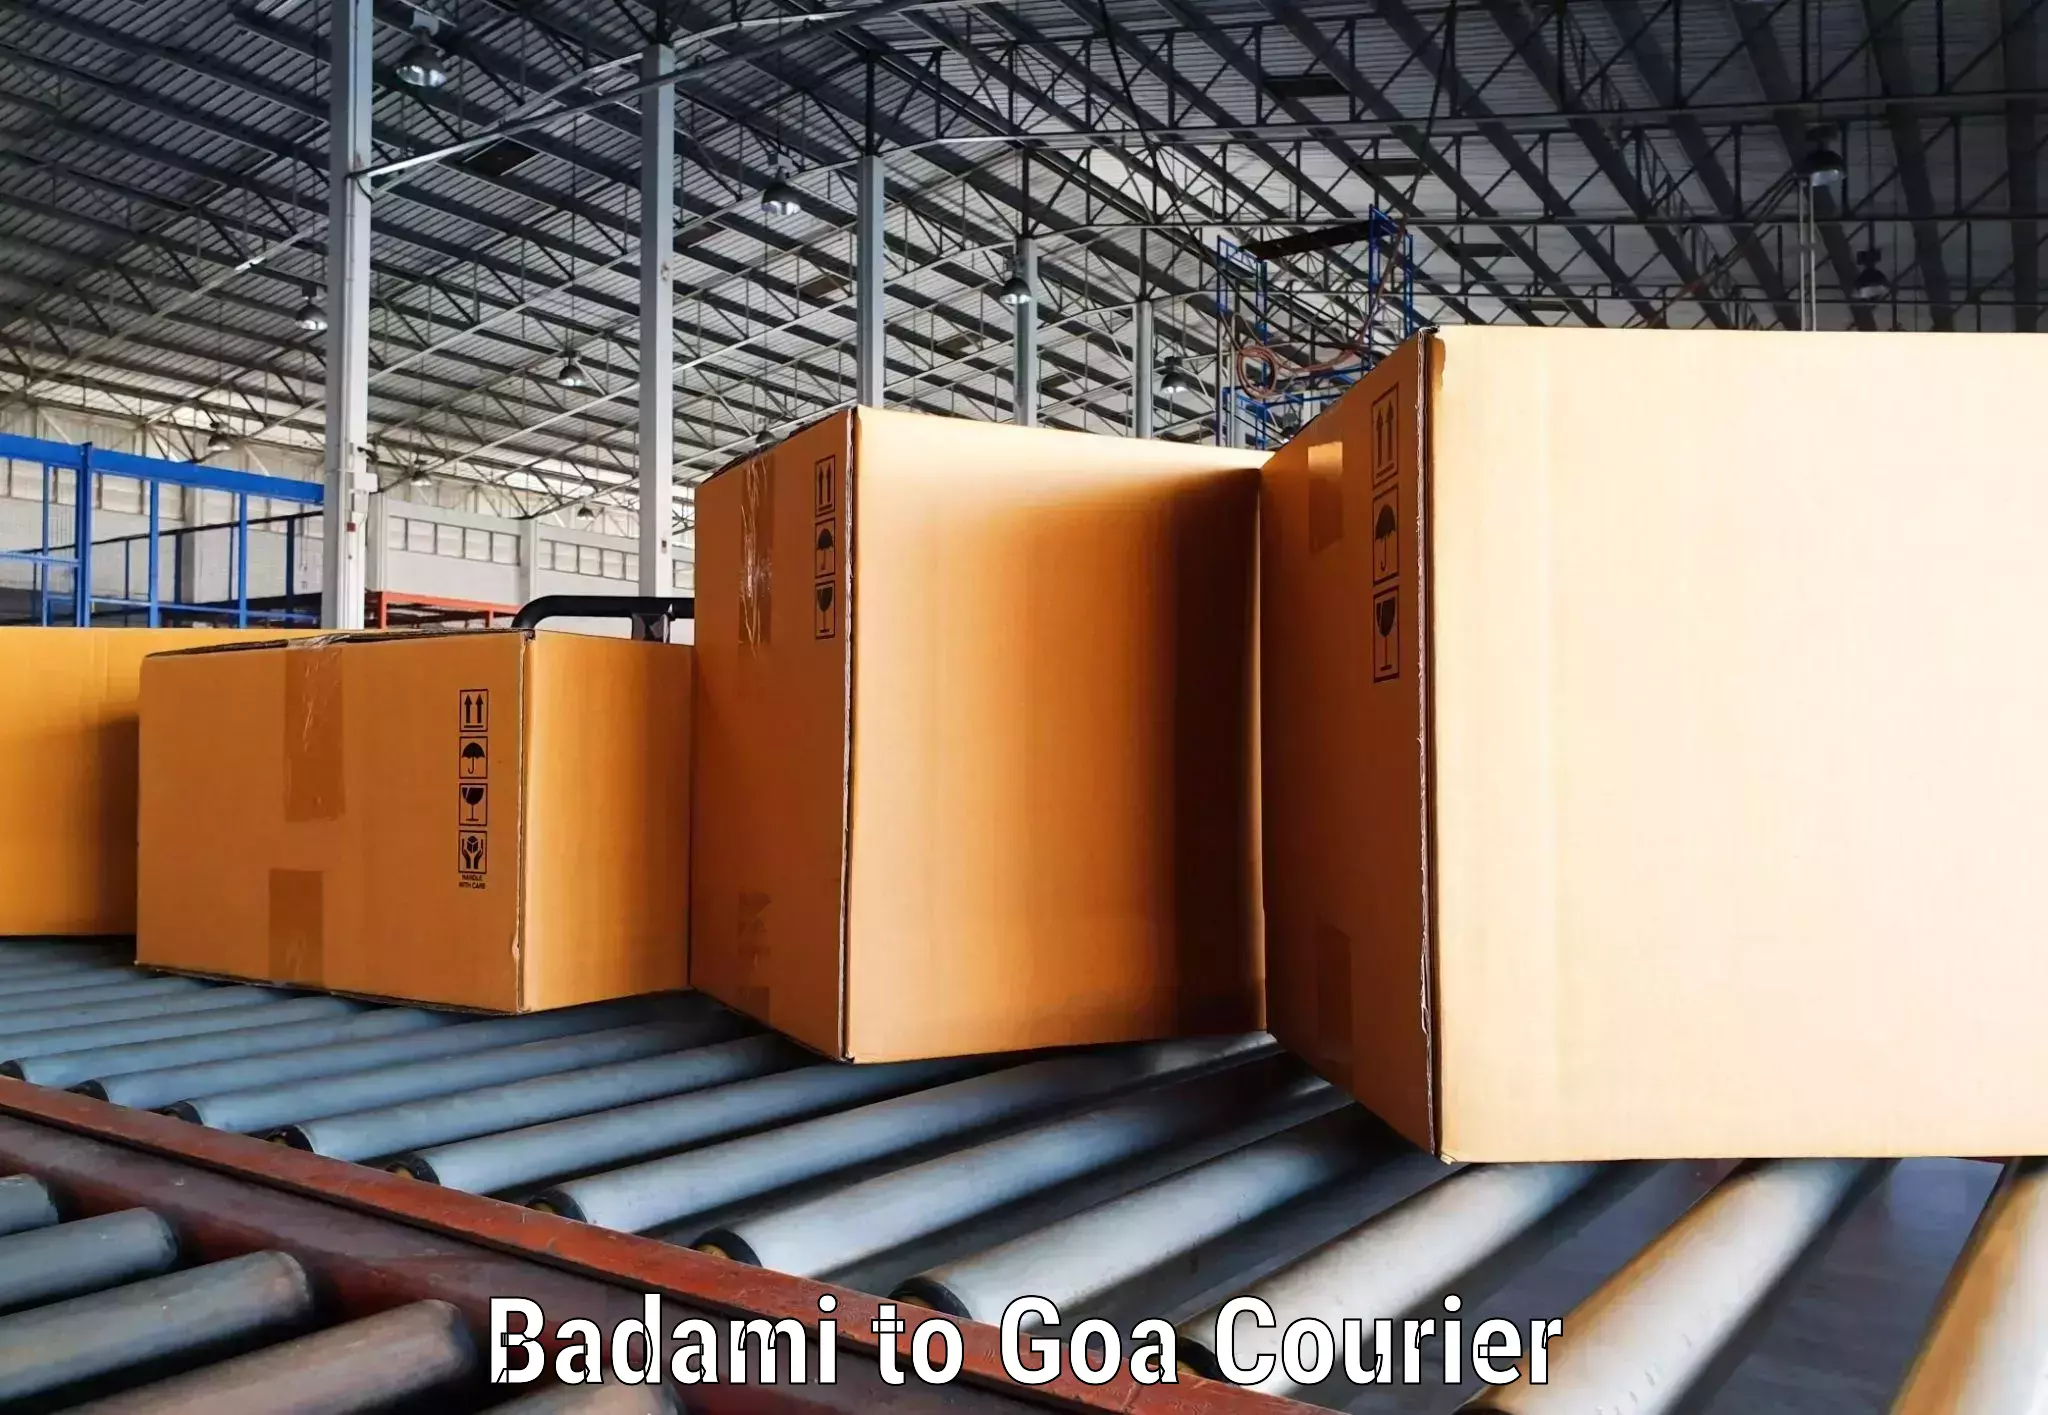 Comprehensive shipping network Badami to IIT Goa